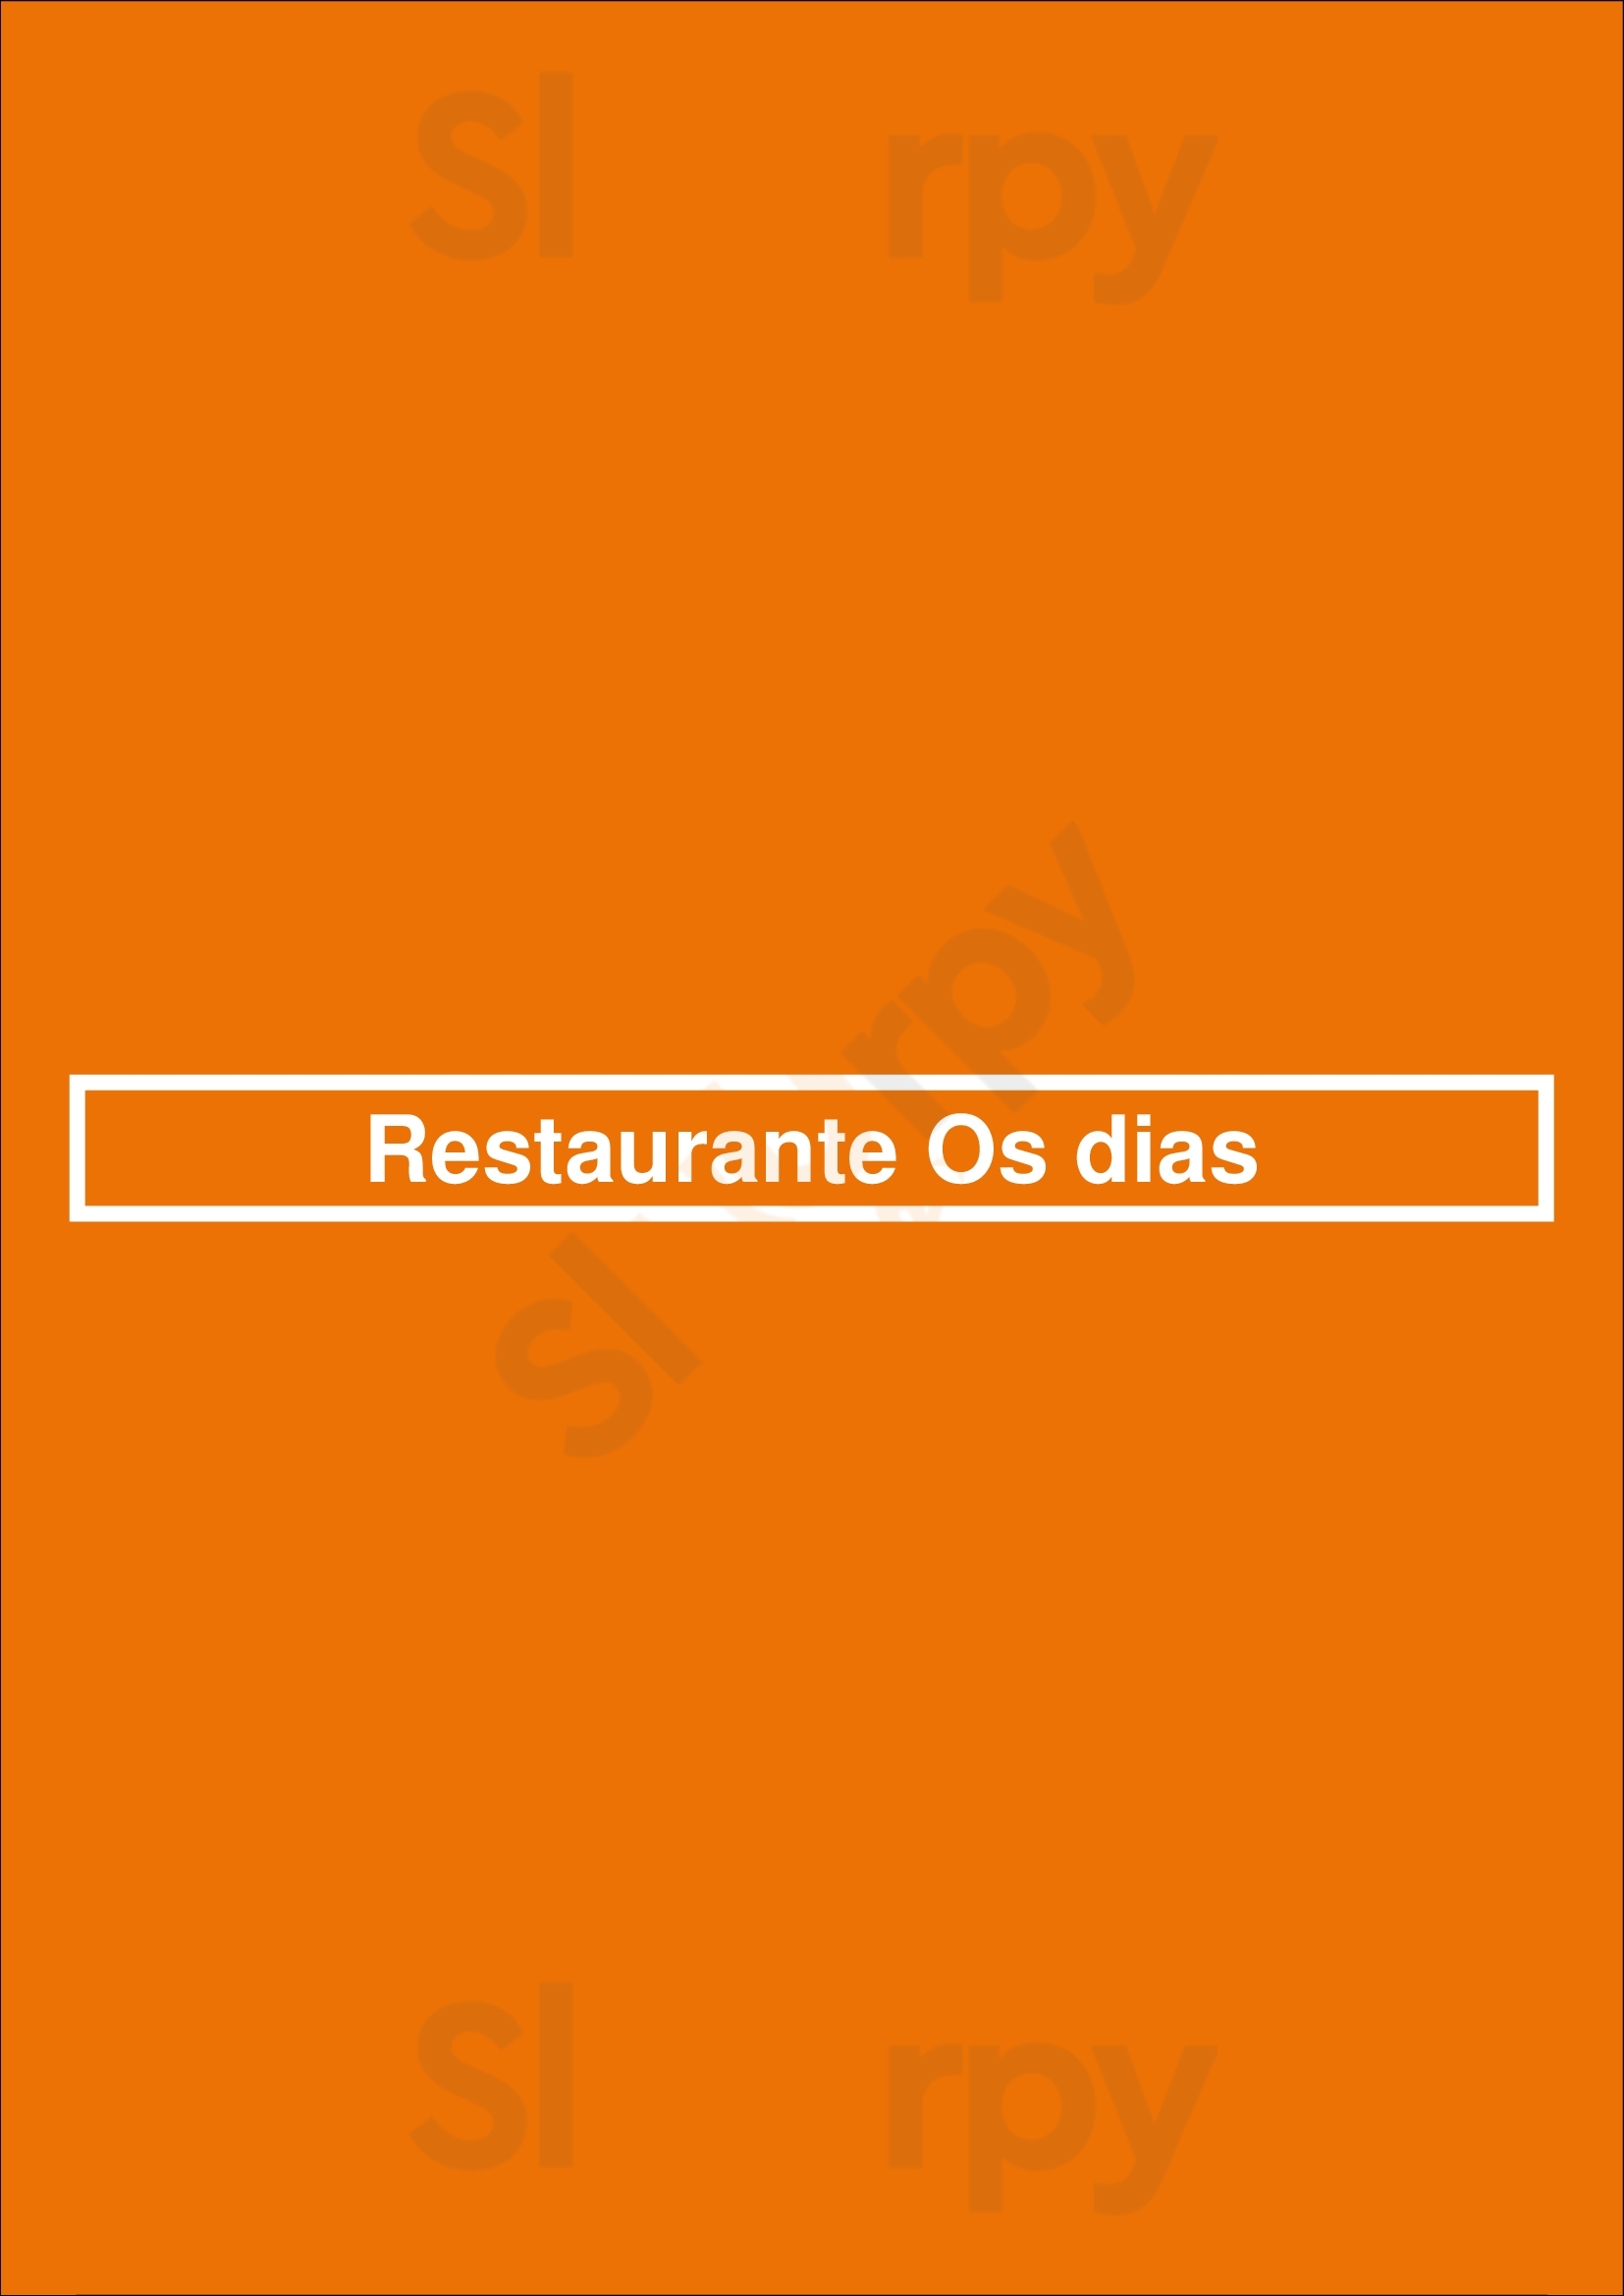 Restaurante Os Dias Lisboa Menu - 1